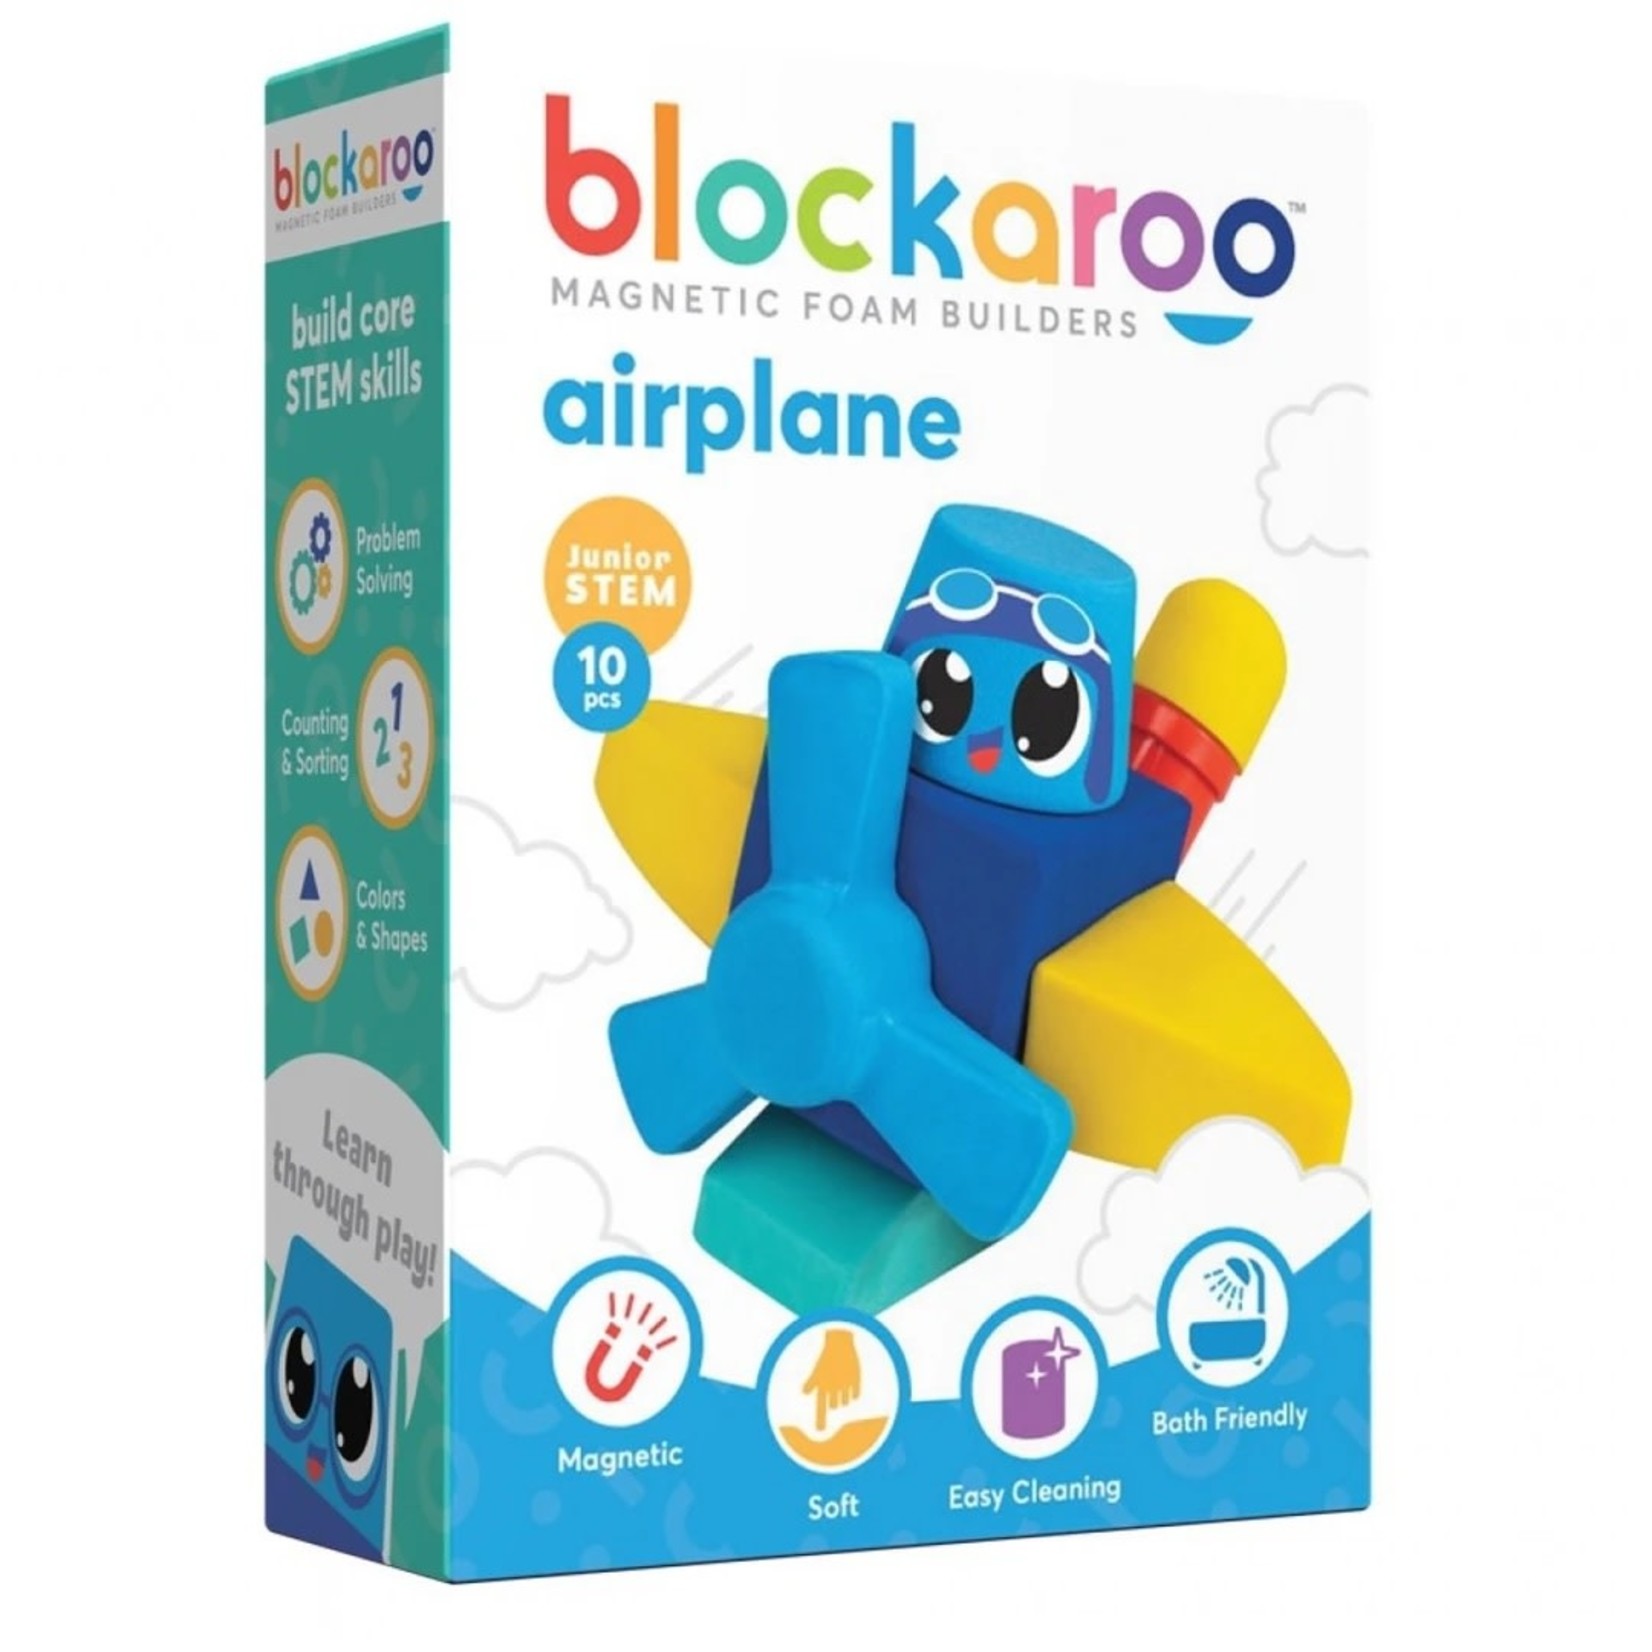 Blockaroo Magnetic Foam Builder Blocks - Airplane